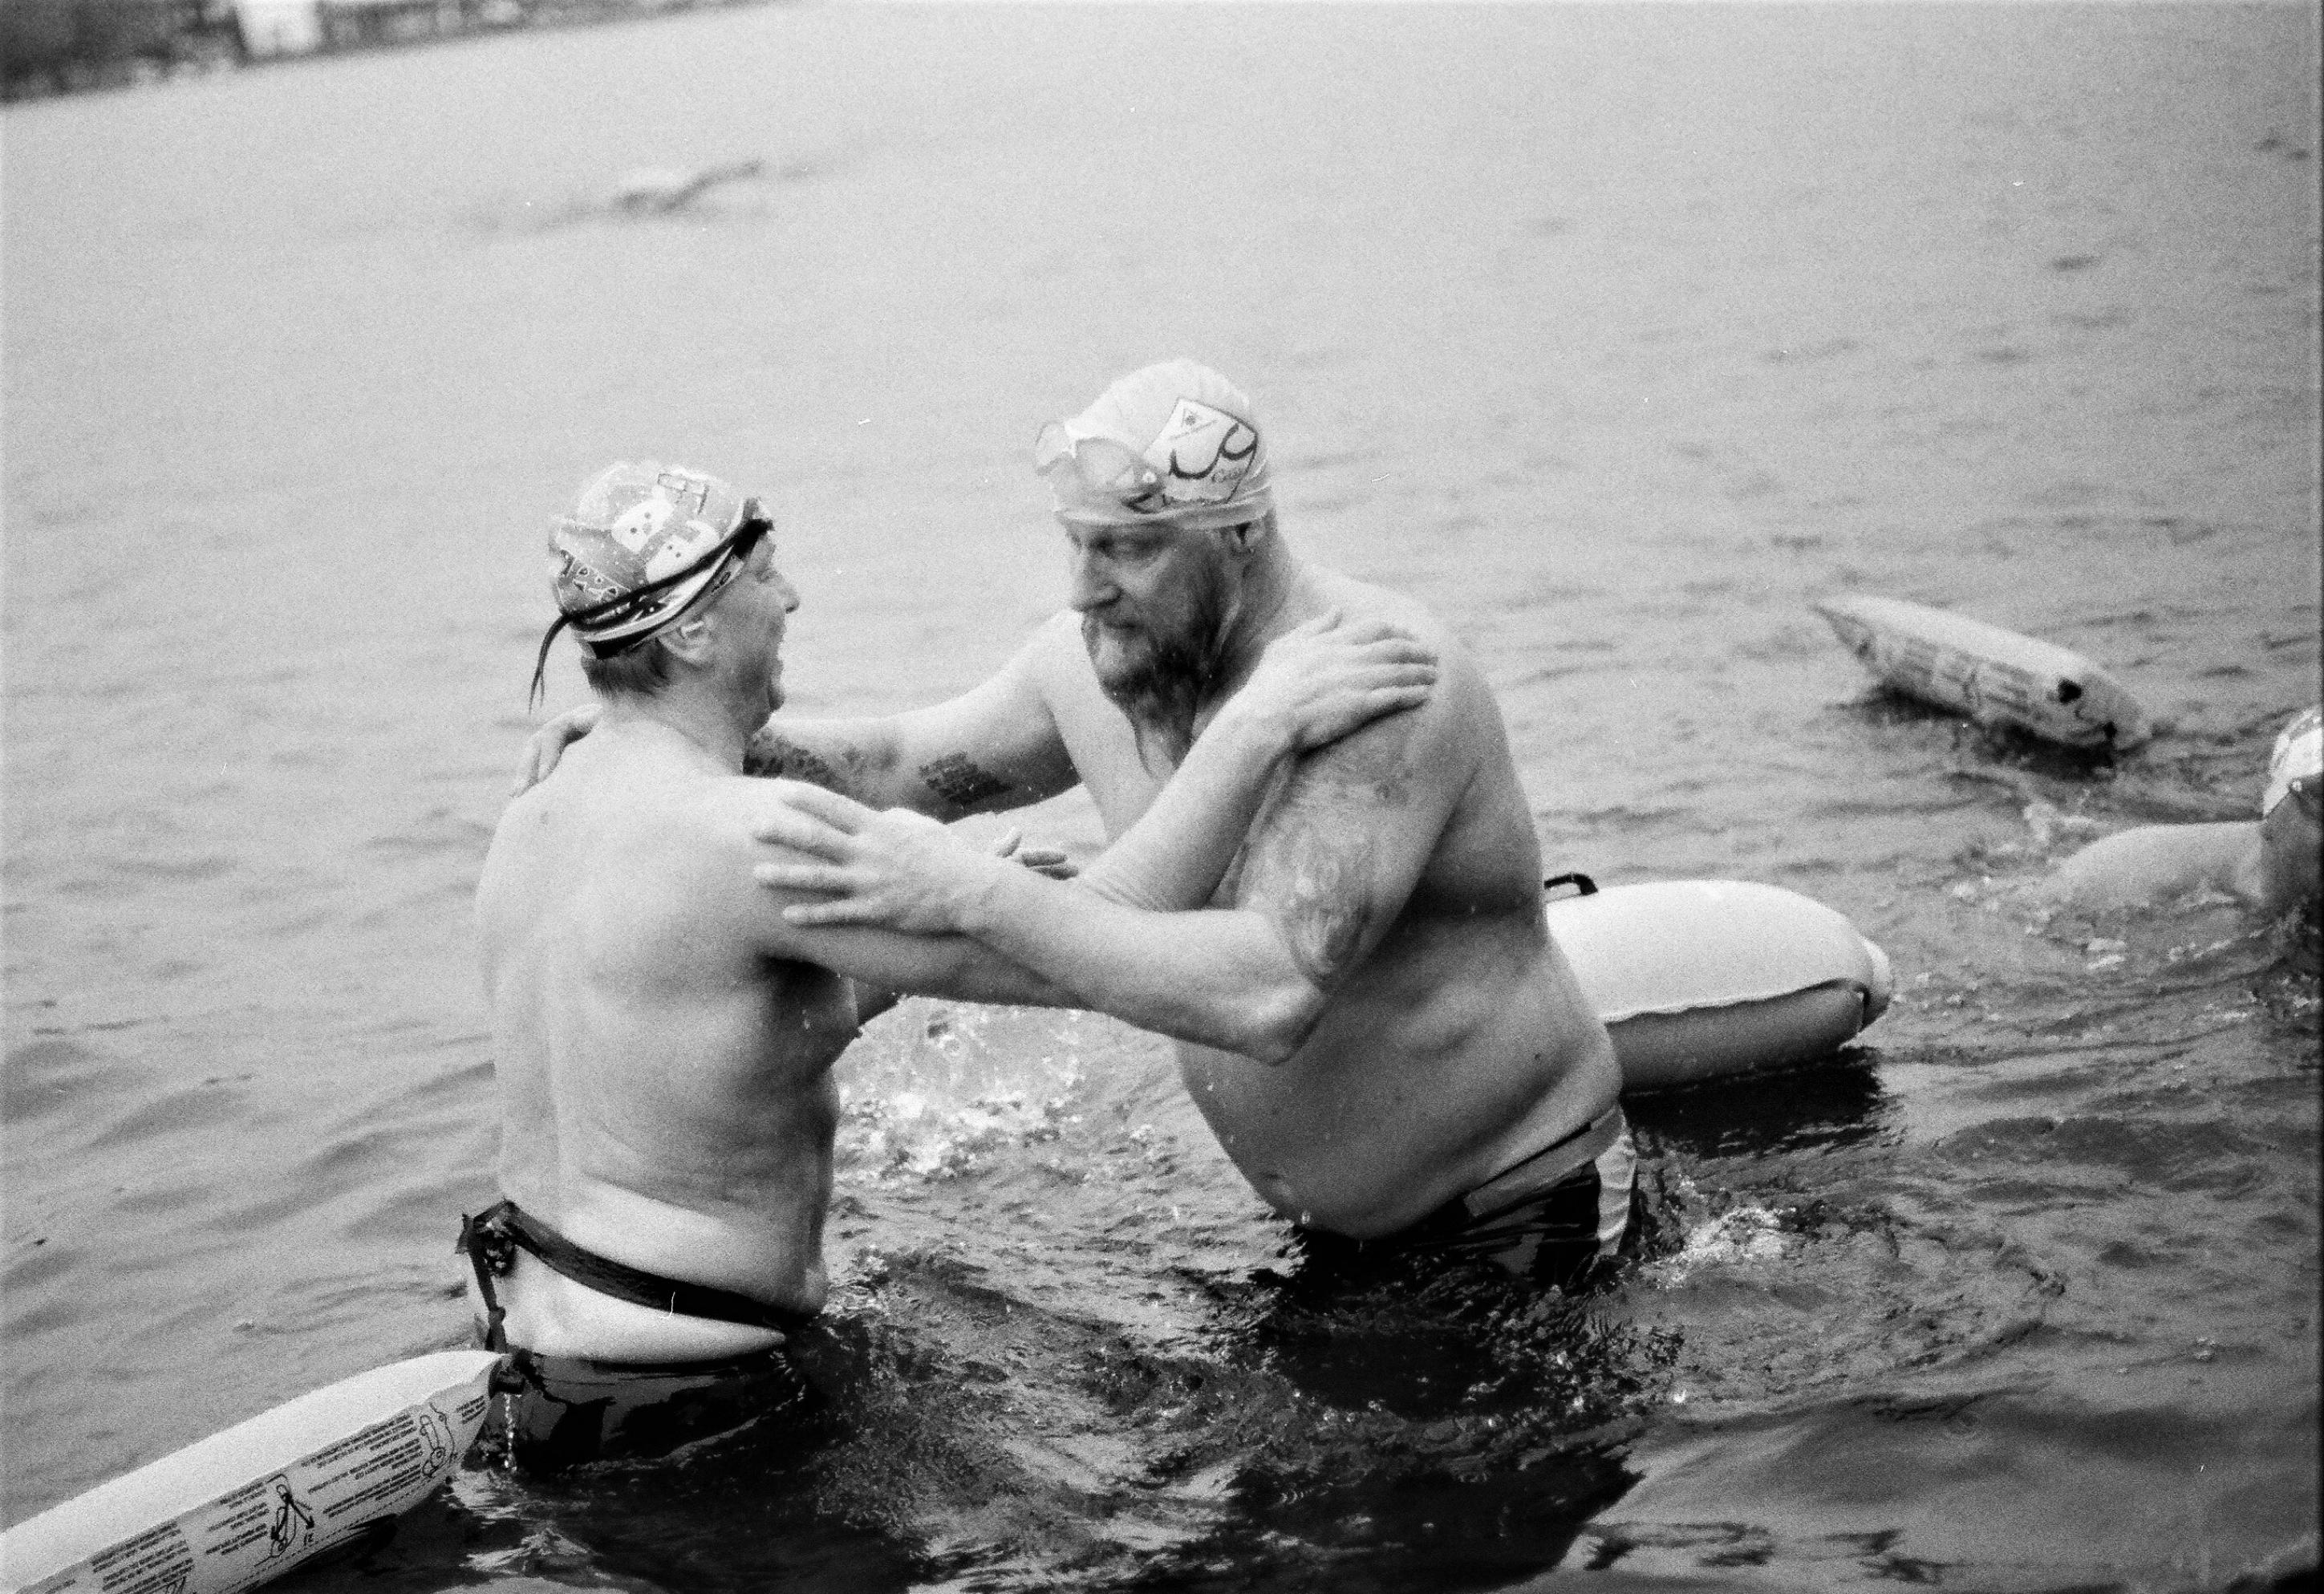 Zwei Männer nur in Badehose im eiskalten Wasser stehend.